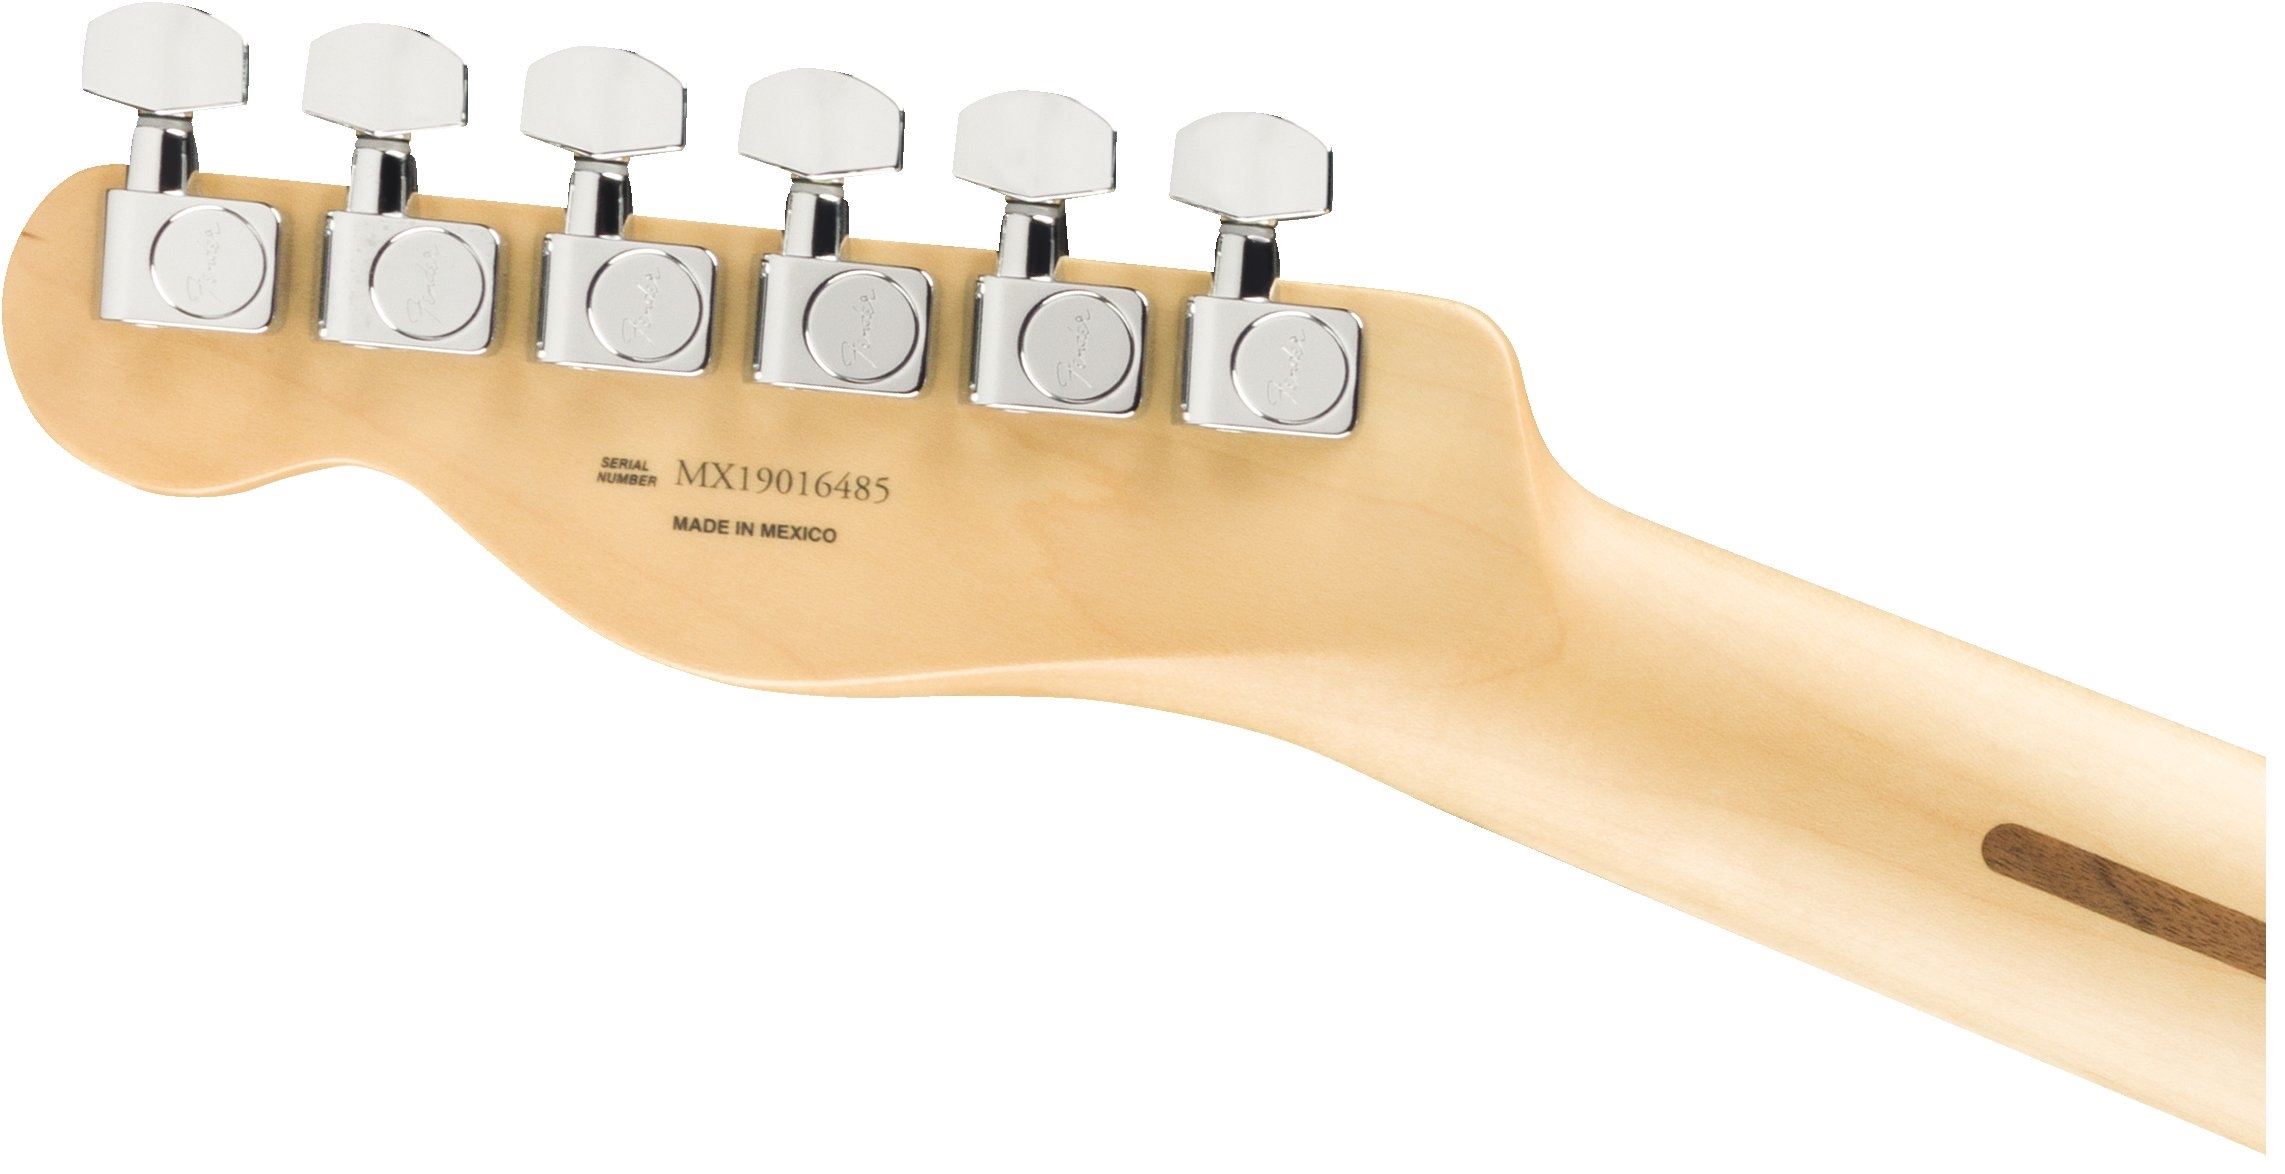 Fender Player Telecaster®, Maple Fingerboard, Capri Orange